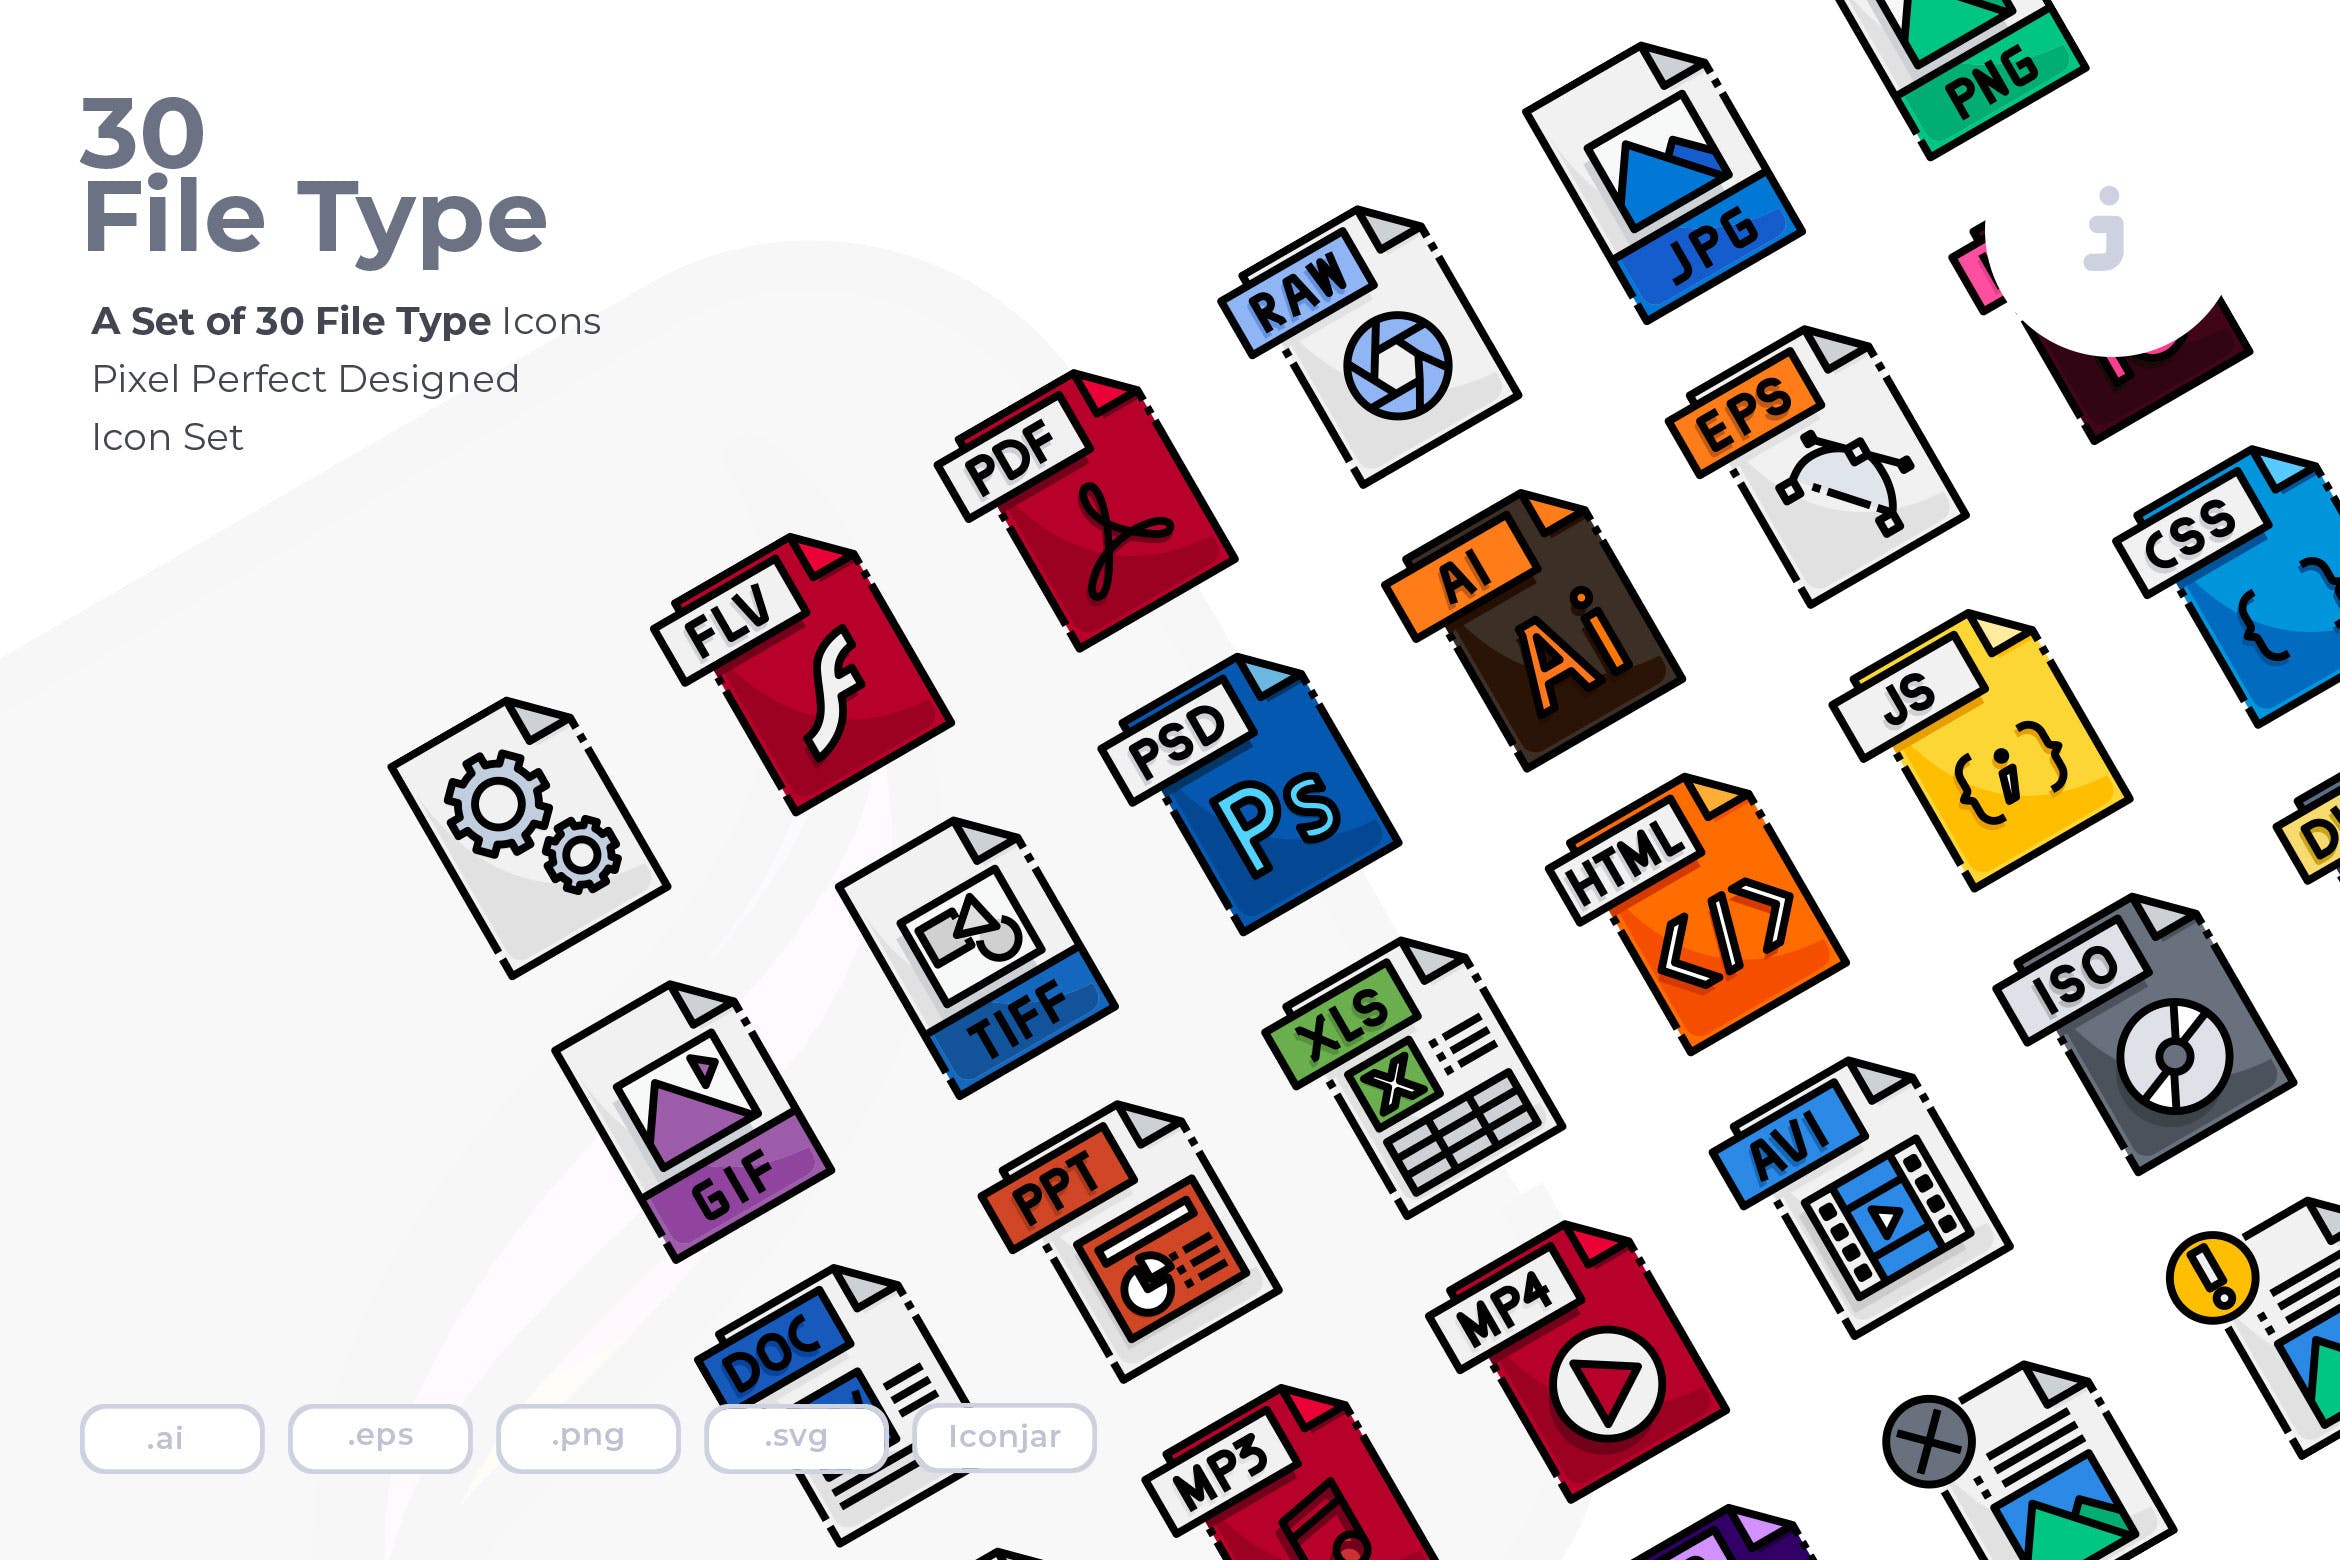 30种文件格式矢量蚂蚁素材精选图标 30 File Type Icons插图